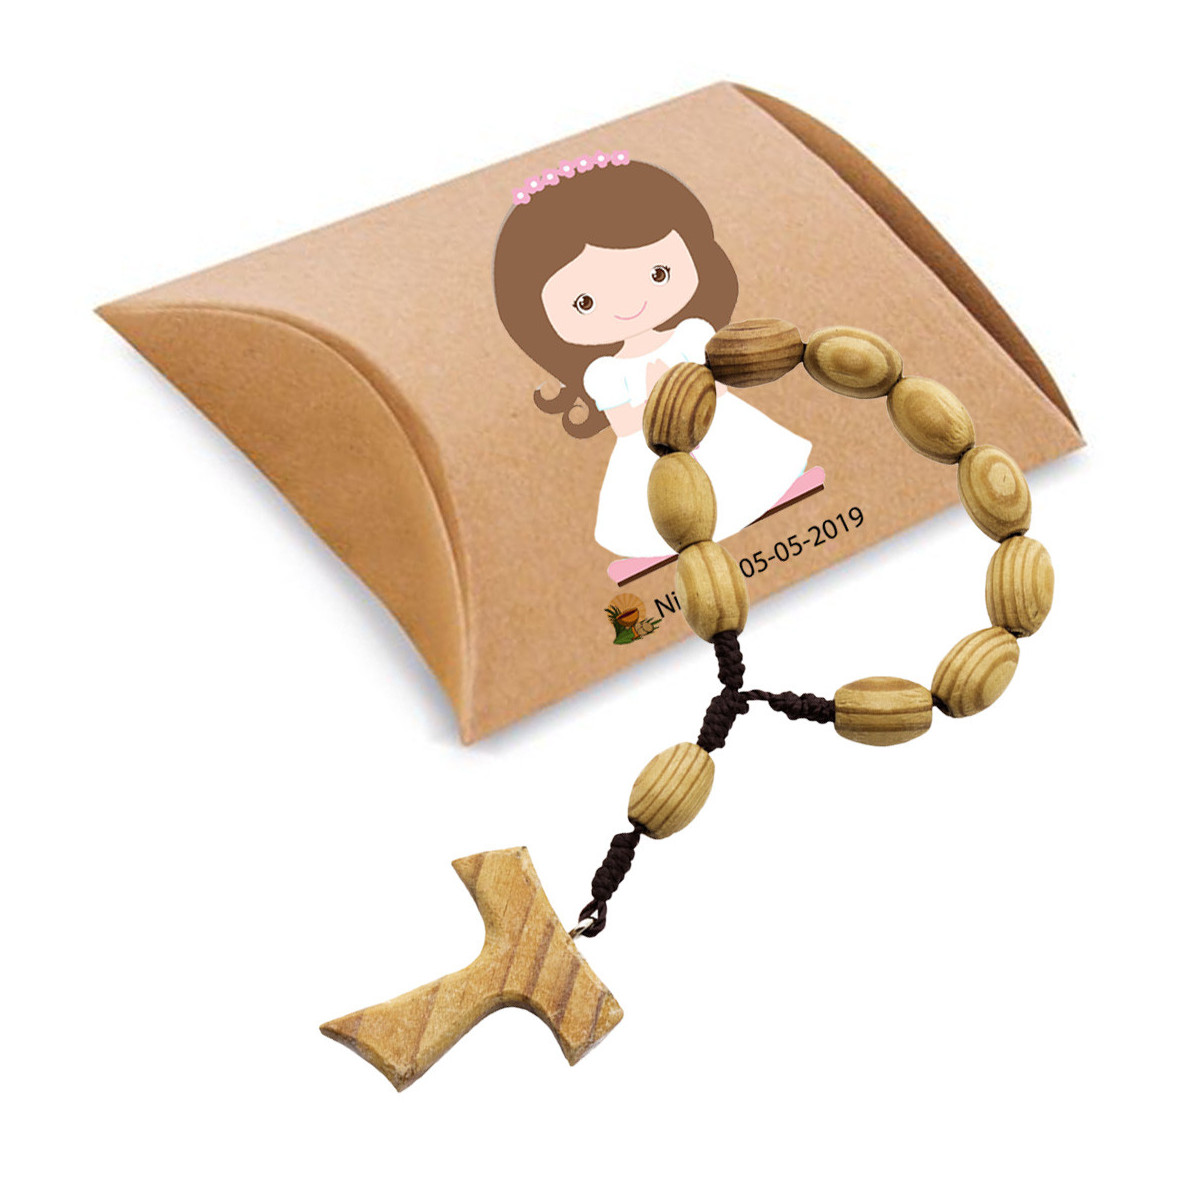 Pulsera rosario de madera presentado en caja kraft y adhesivos de comunión